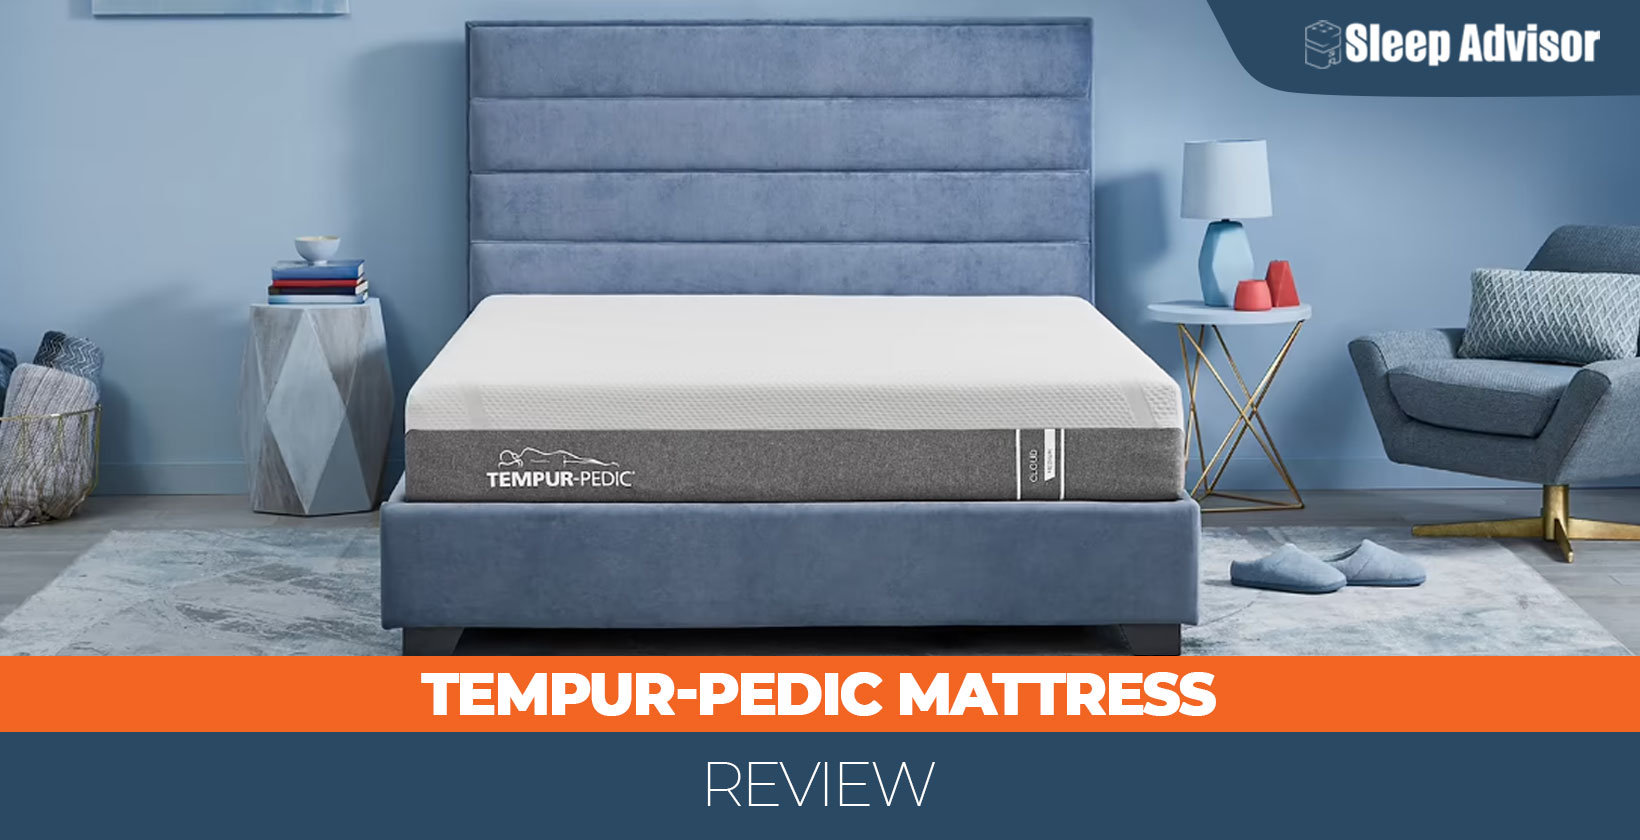 Tempur-Pedic mattress review 1640x840px